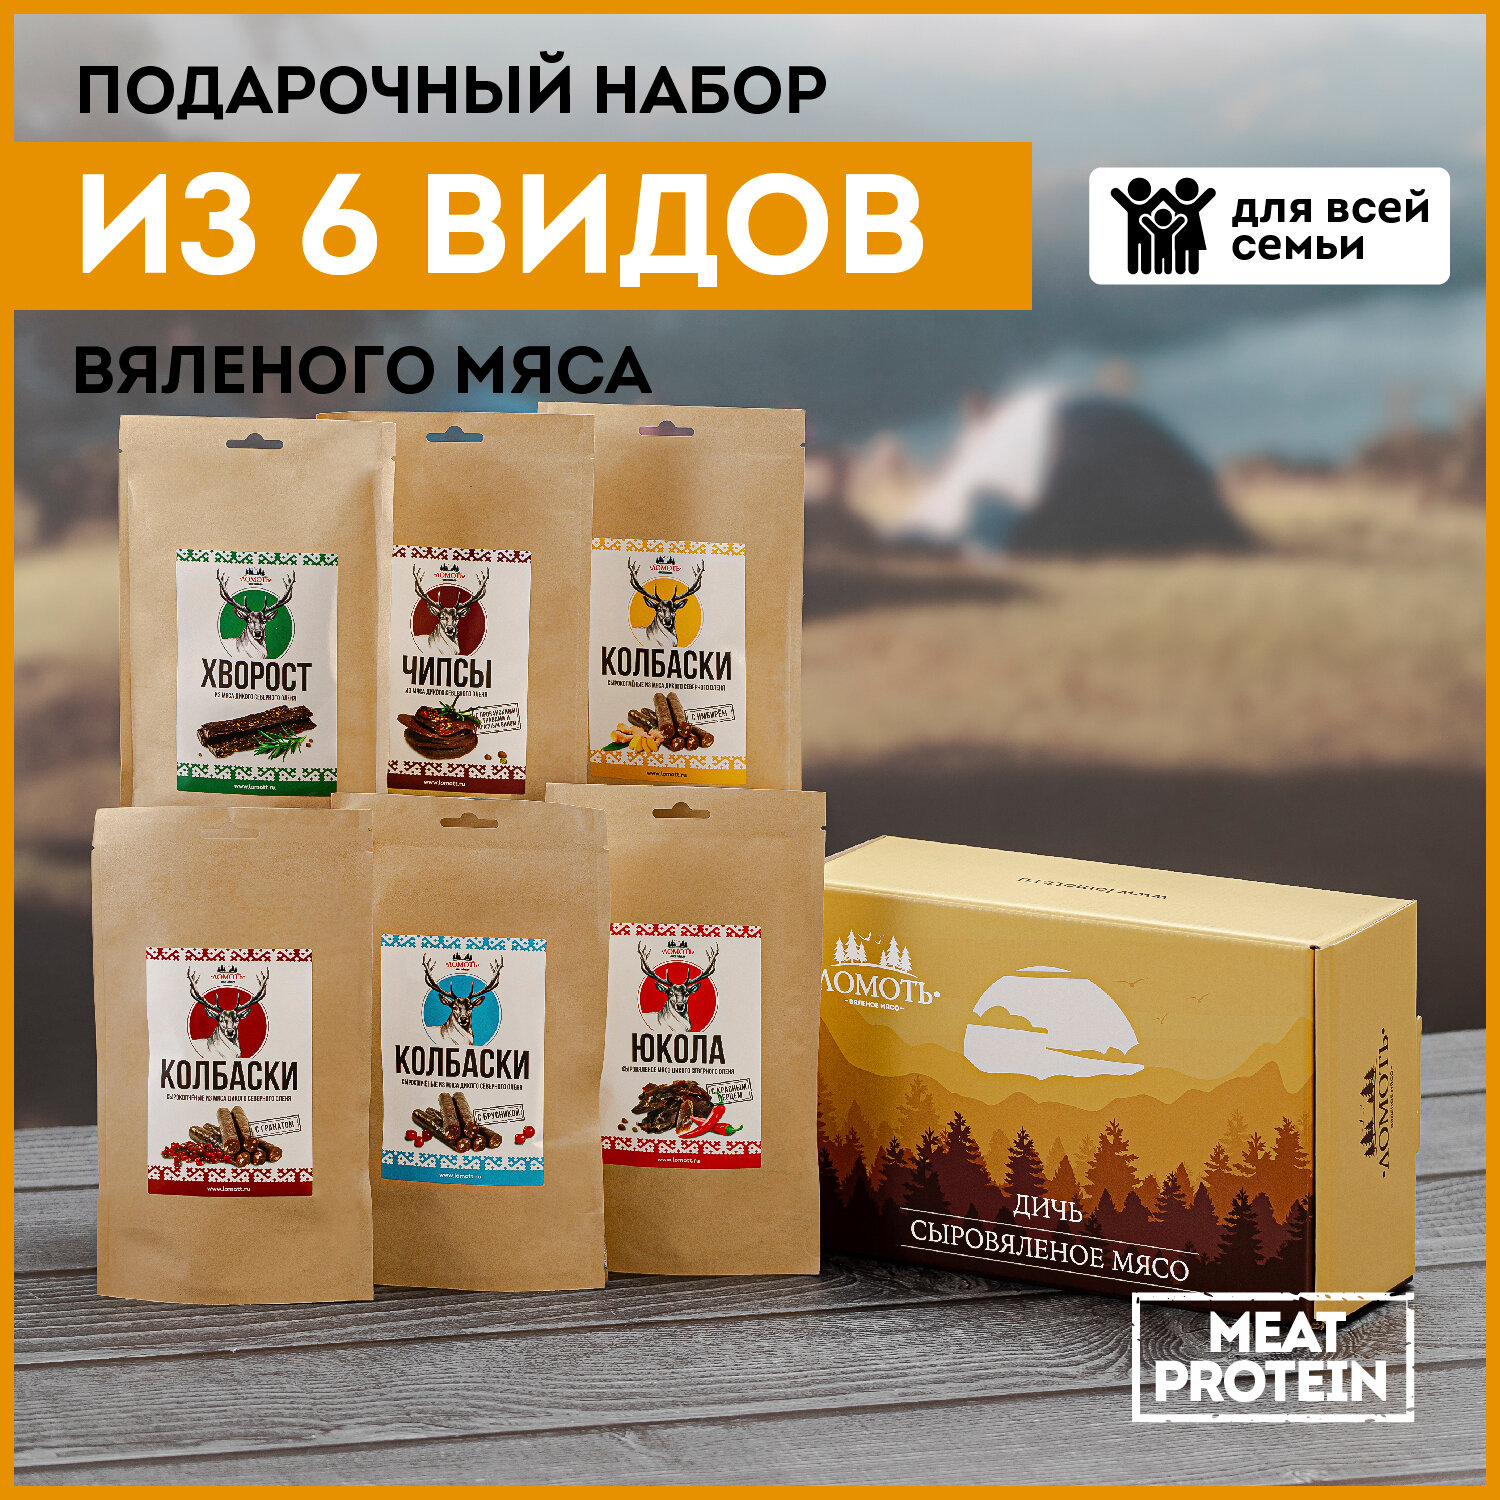 Подарочный набор Ломоть деликатесы С севера (6 пачек - 290 грамм оленины) подарок мужчине на 23 февраля